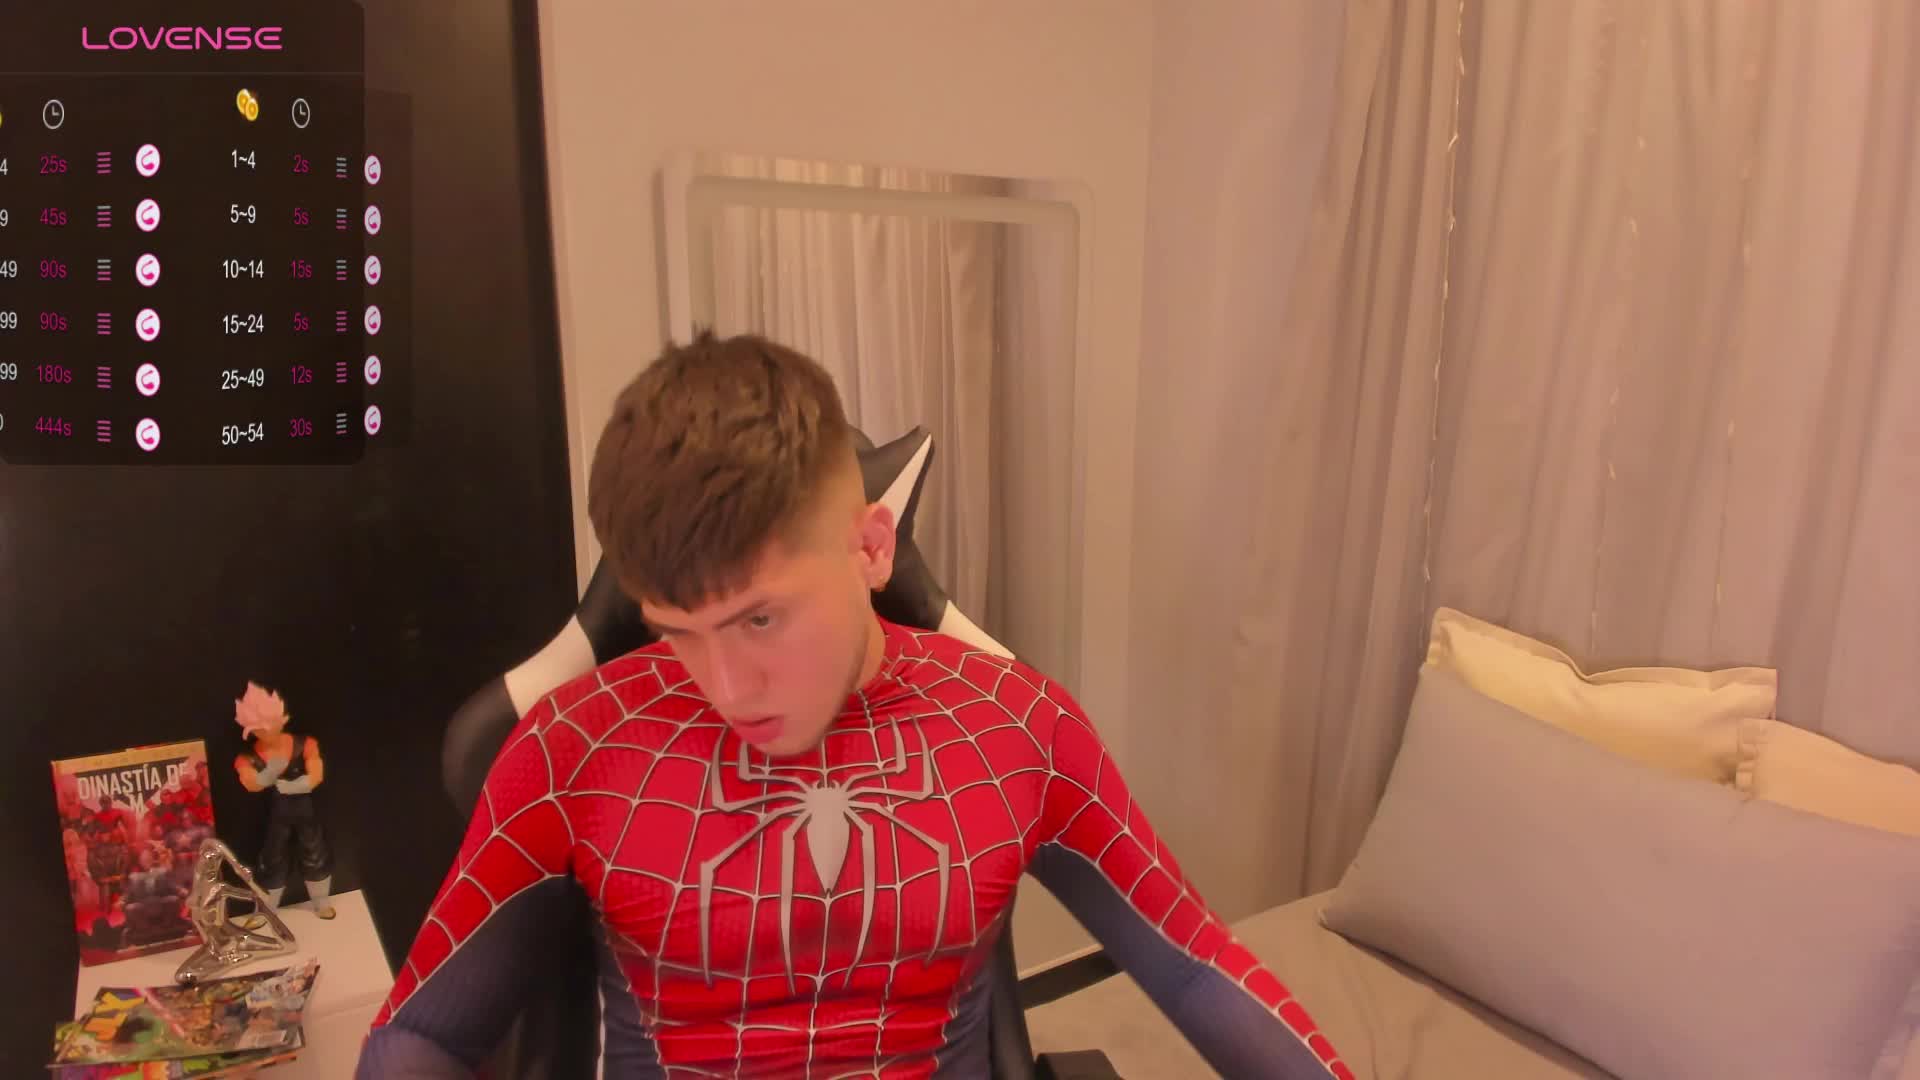 spiderman caught!